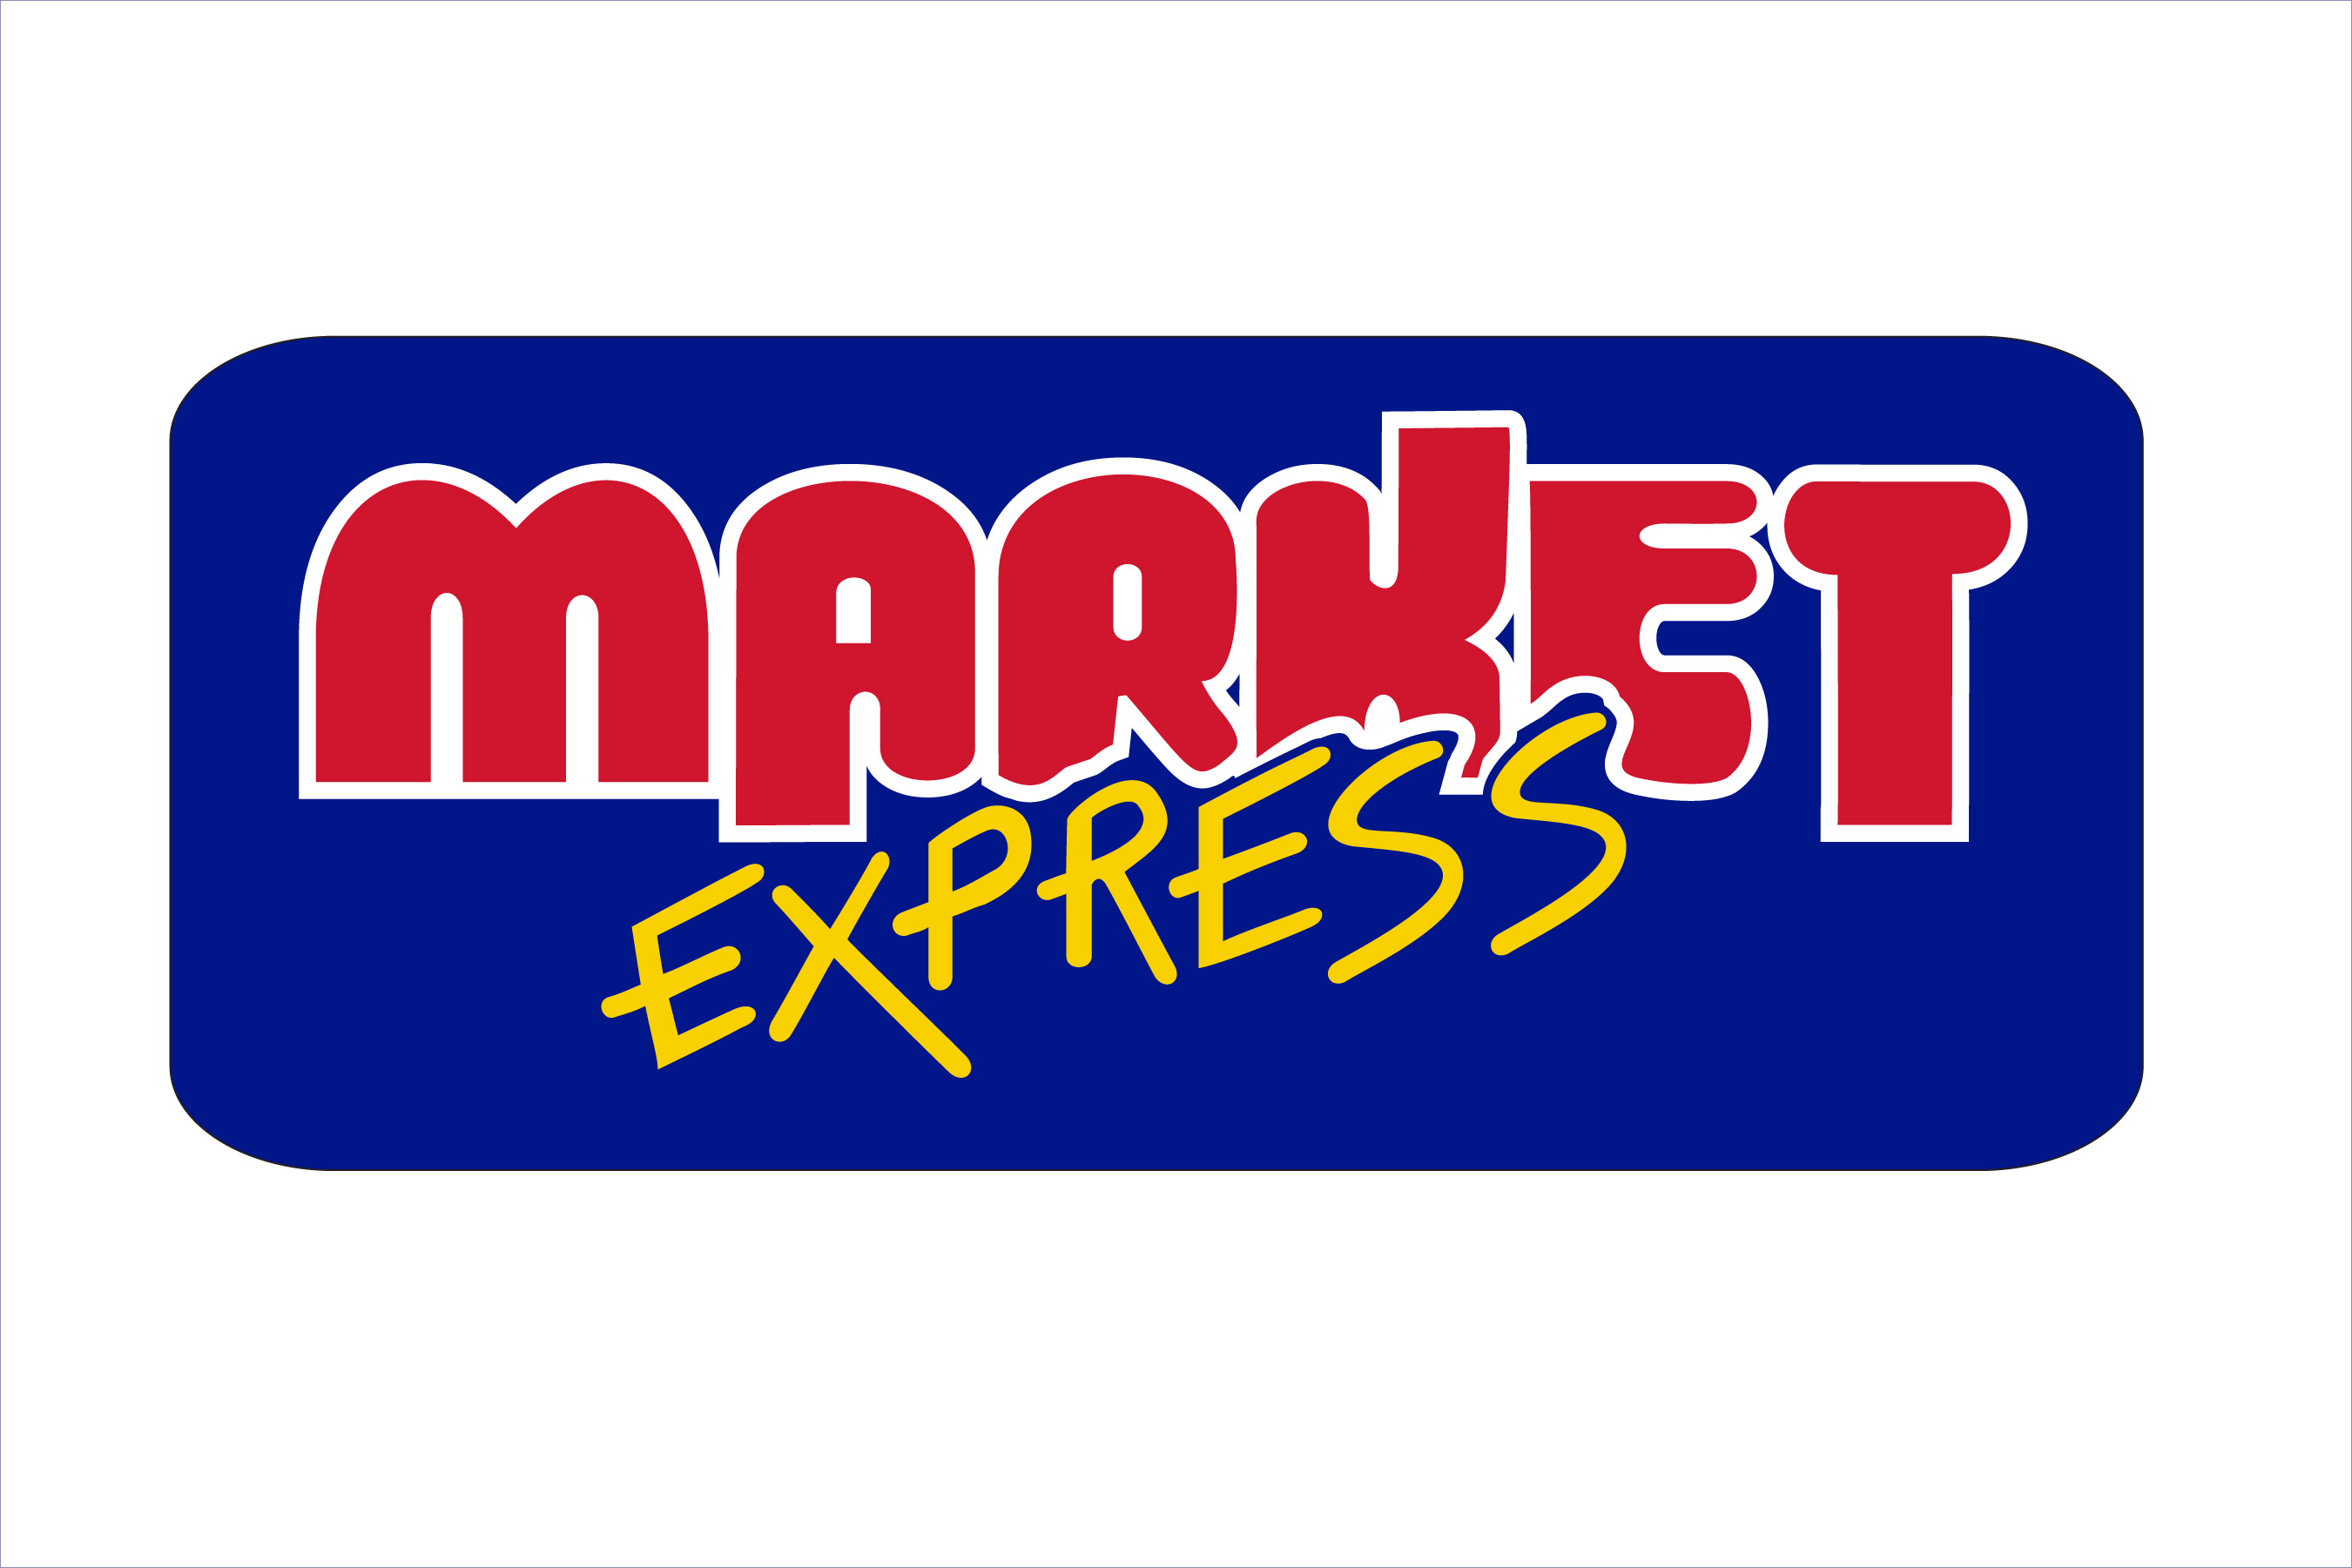 MARKET EXPRESS SINCLAIR - $10 CERTIFICATE